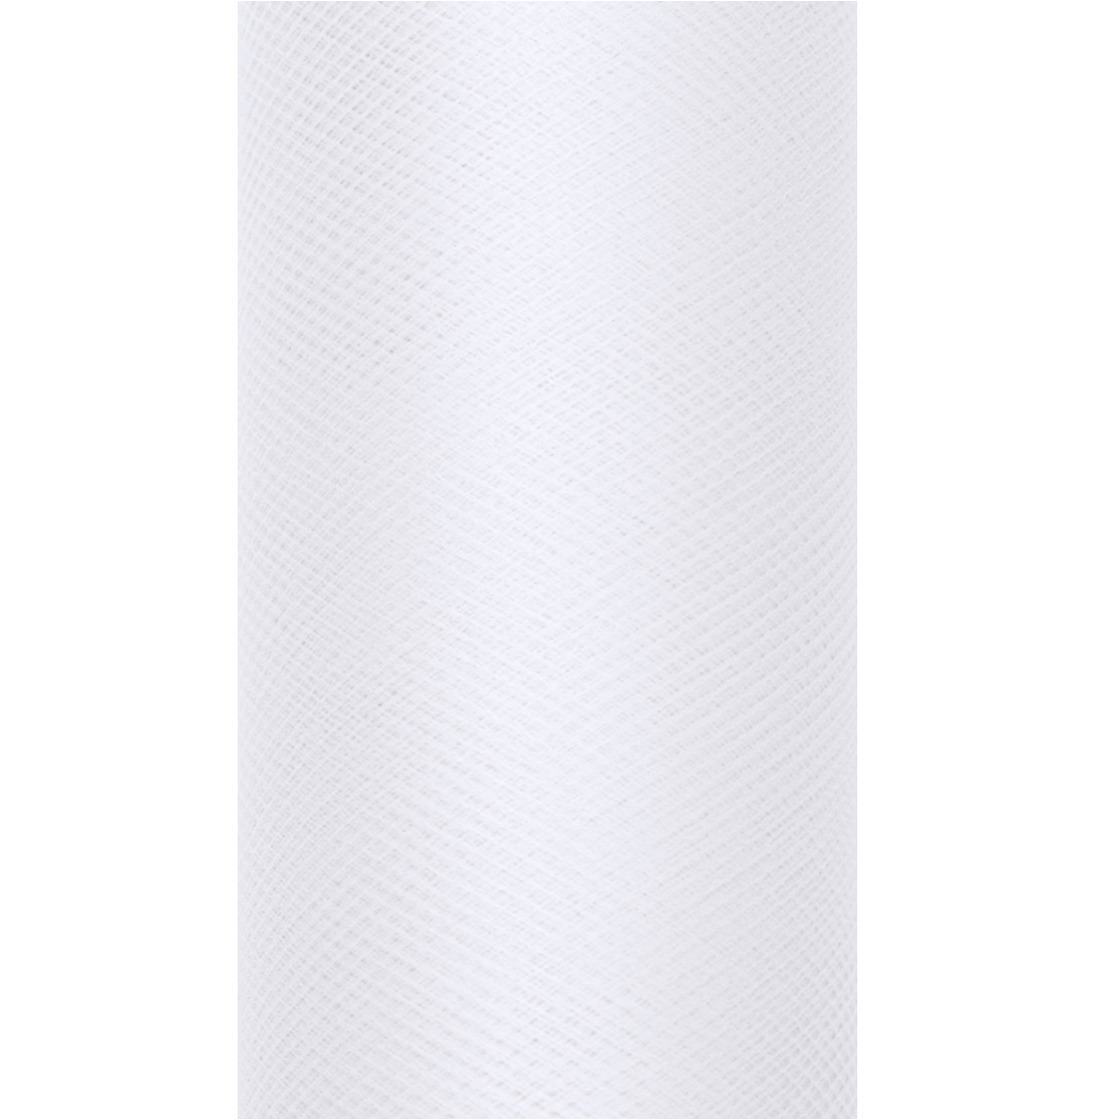 1x Witte tulestof/gaatjesstof rol 15 cm x 9 meter cadeaulint verpakkingsmateriaal